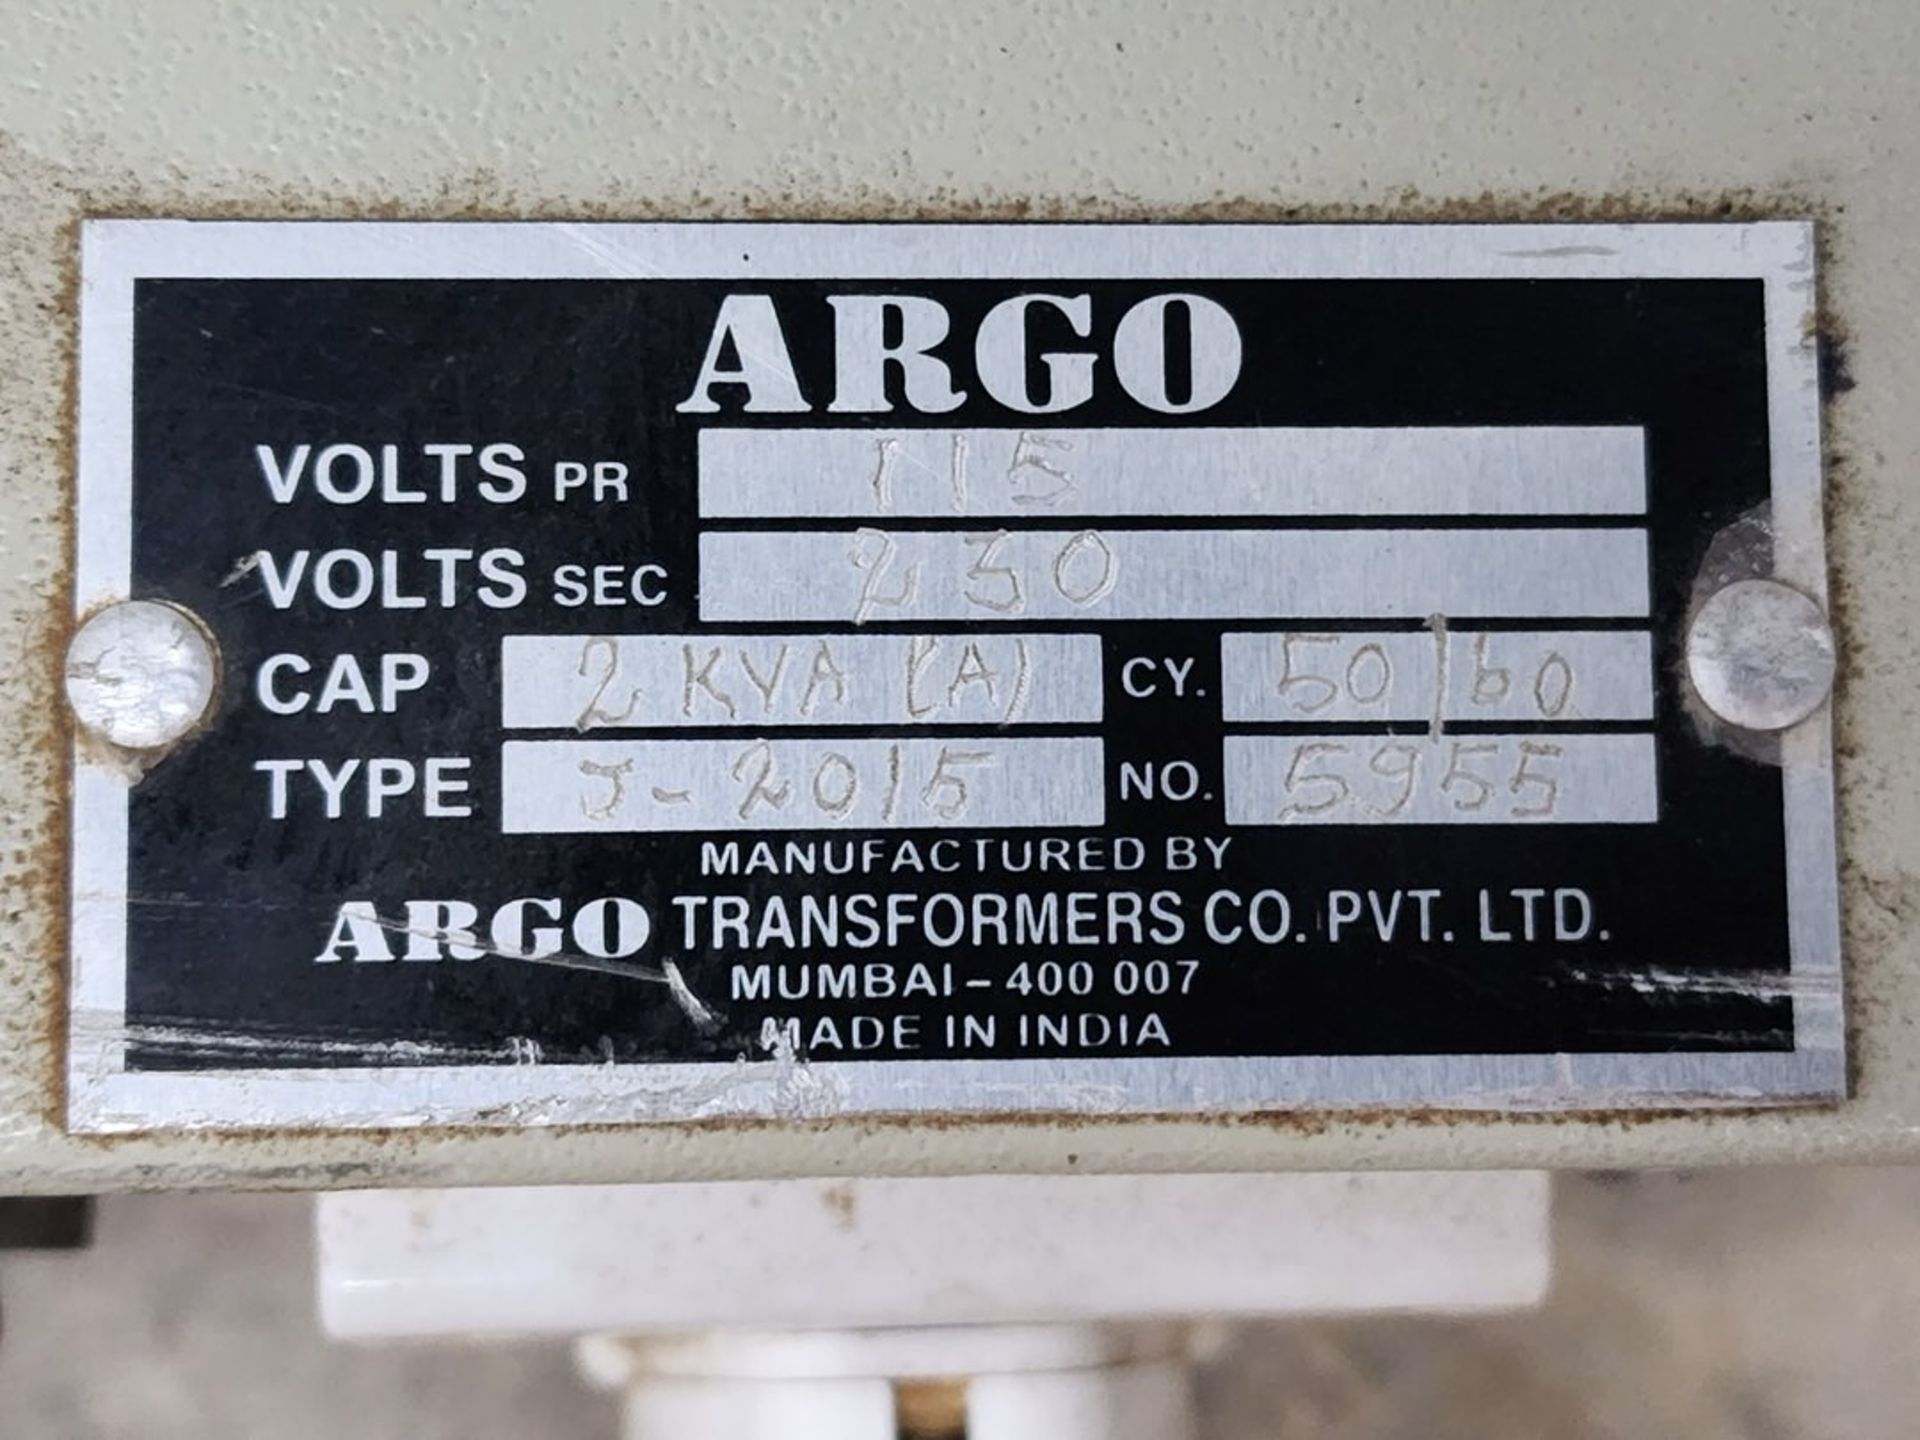 Argo J-2015 Induction Sealing Machine Capacity: 2KVA, 50/60hz, 115/230v - Image 9 of 9